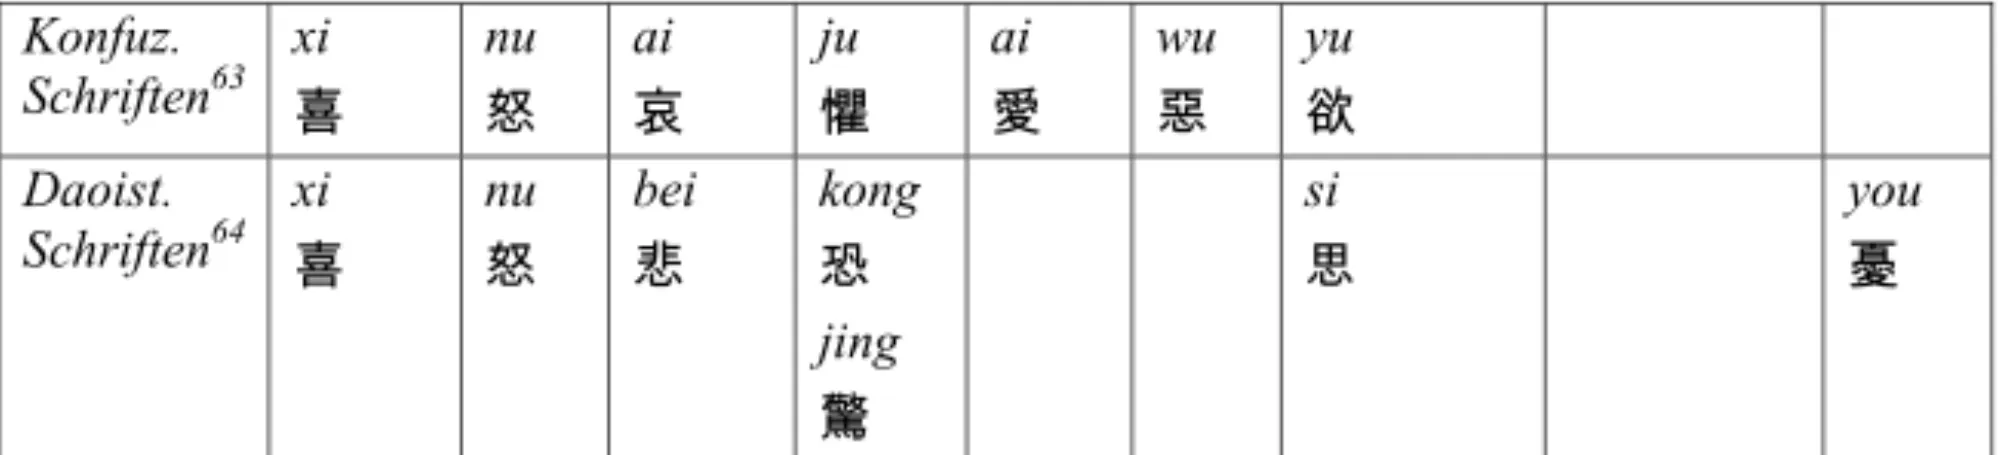 Abb. 3: Emotionsnennungen in einigen klassischen chinesischen Philosophietexten 